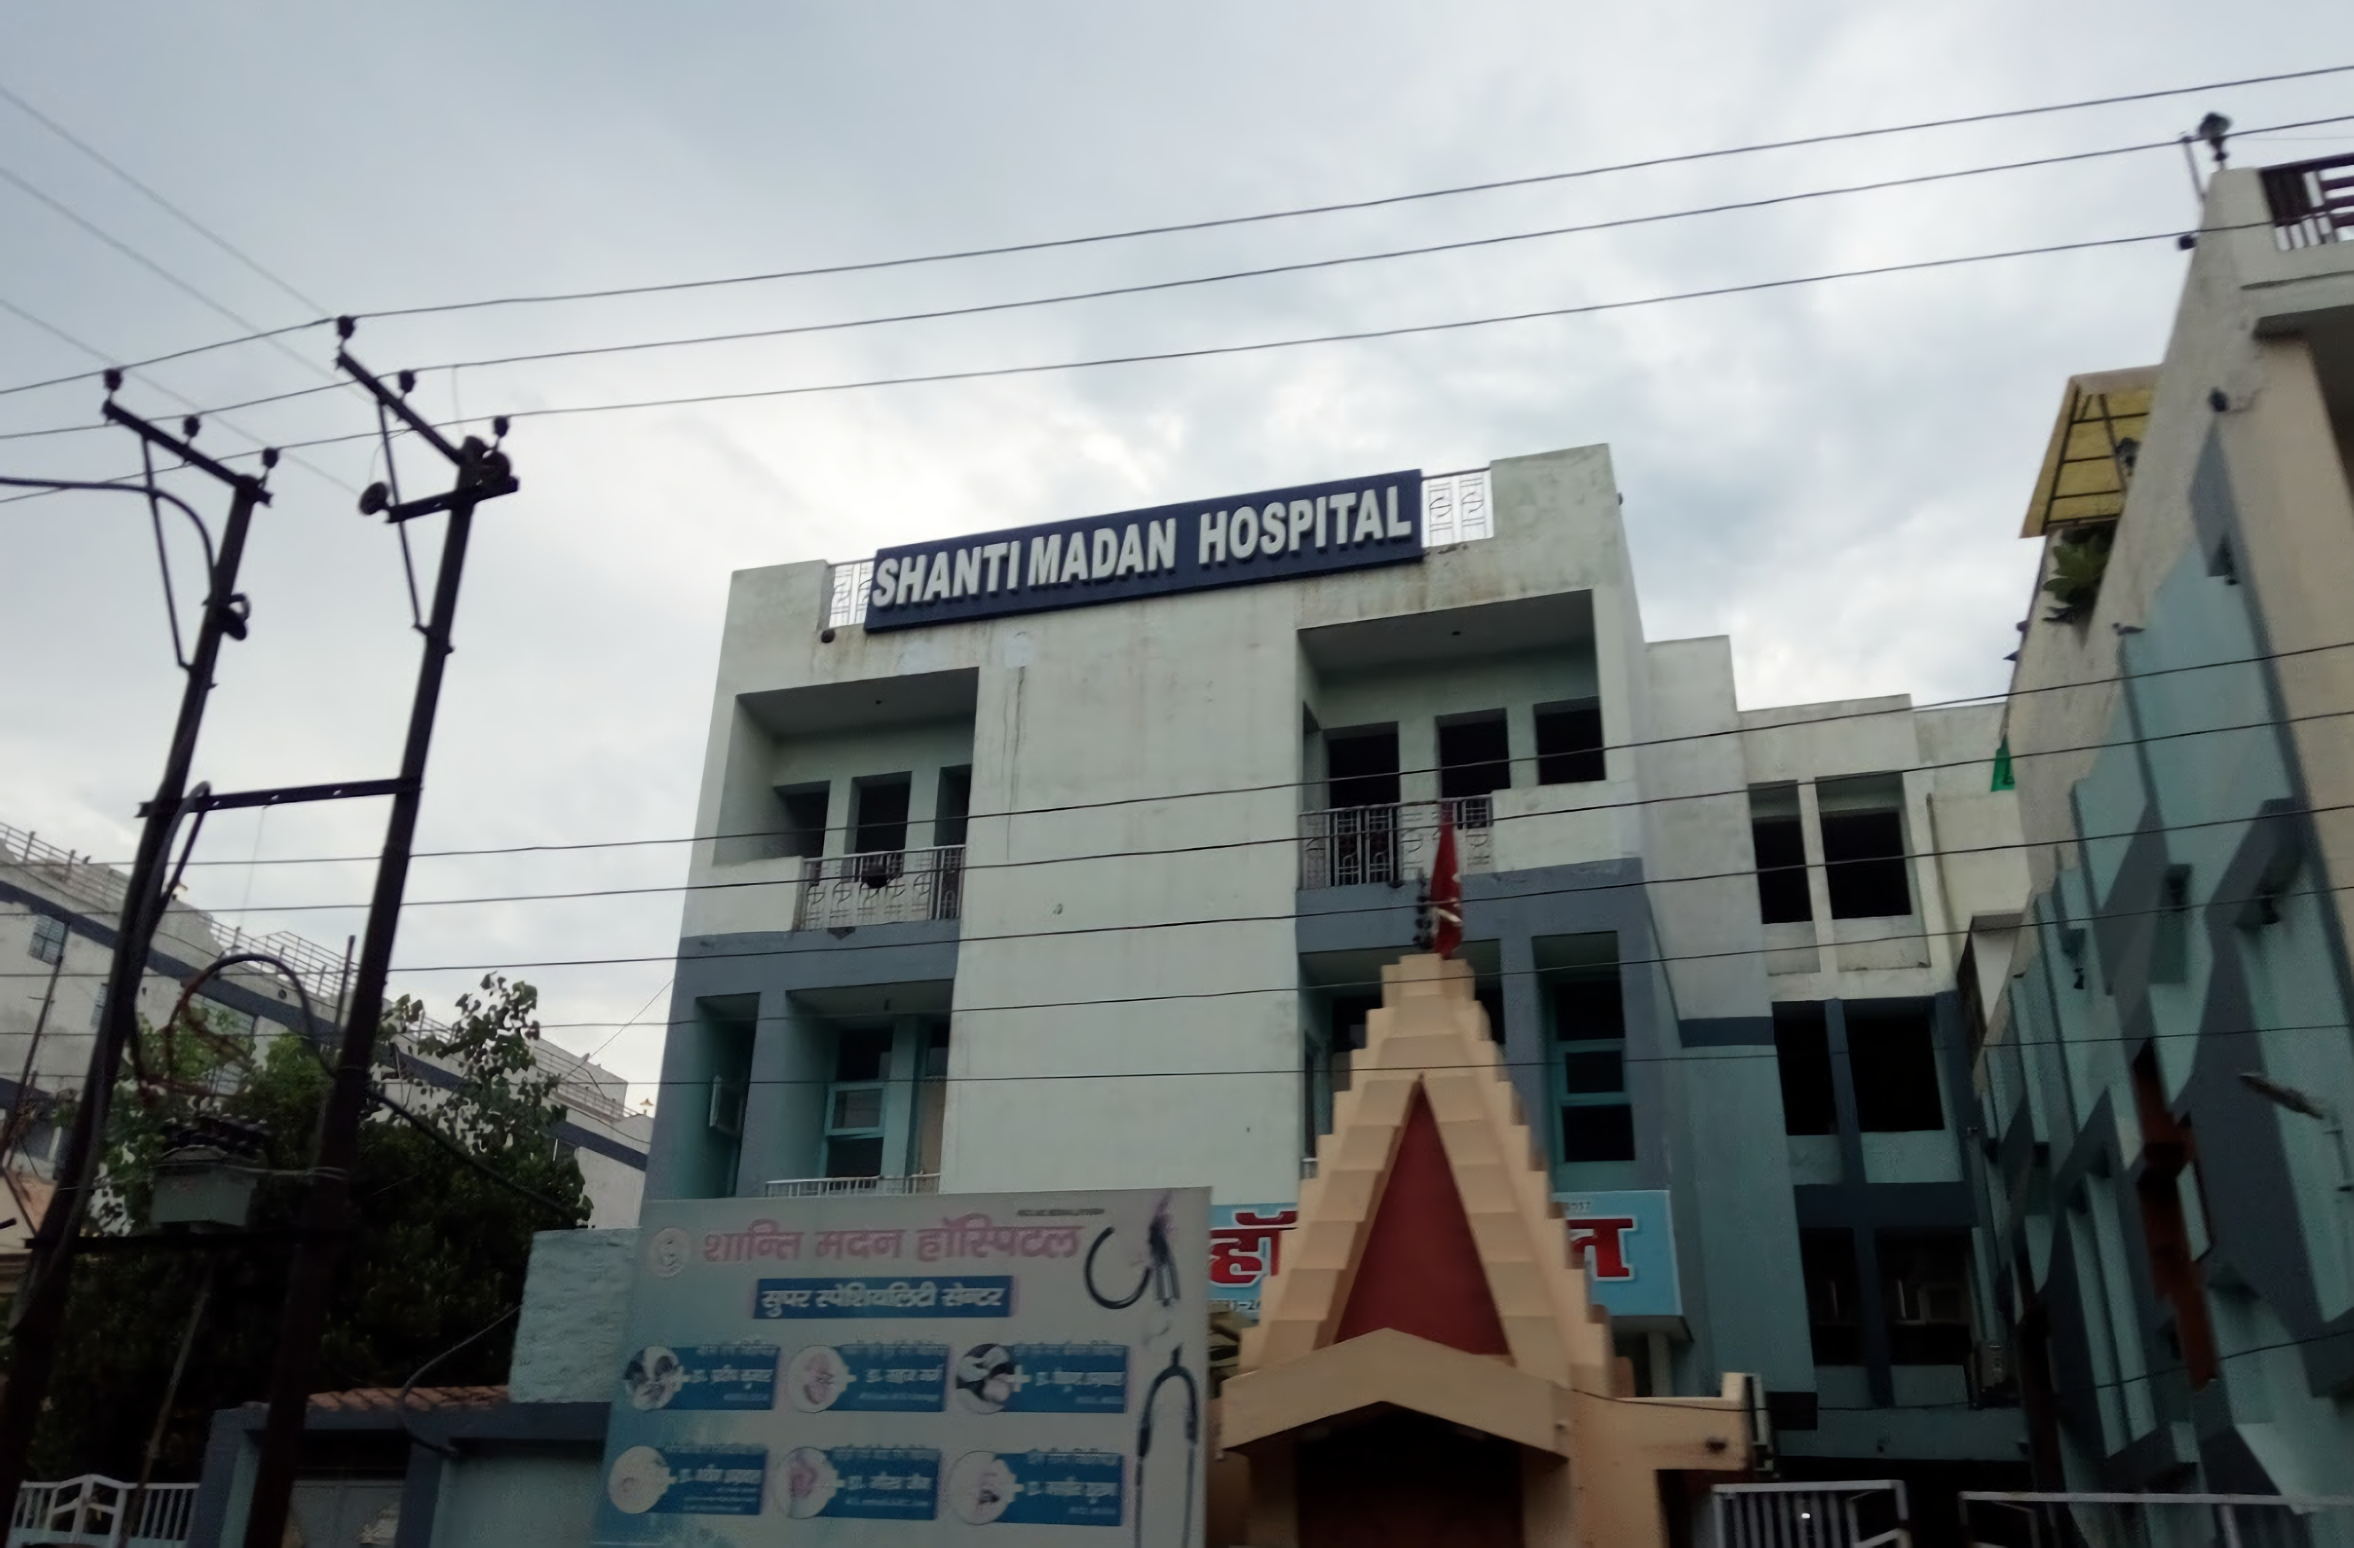 Shanti Madan Hospital